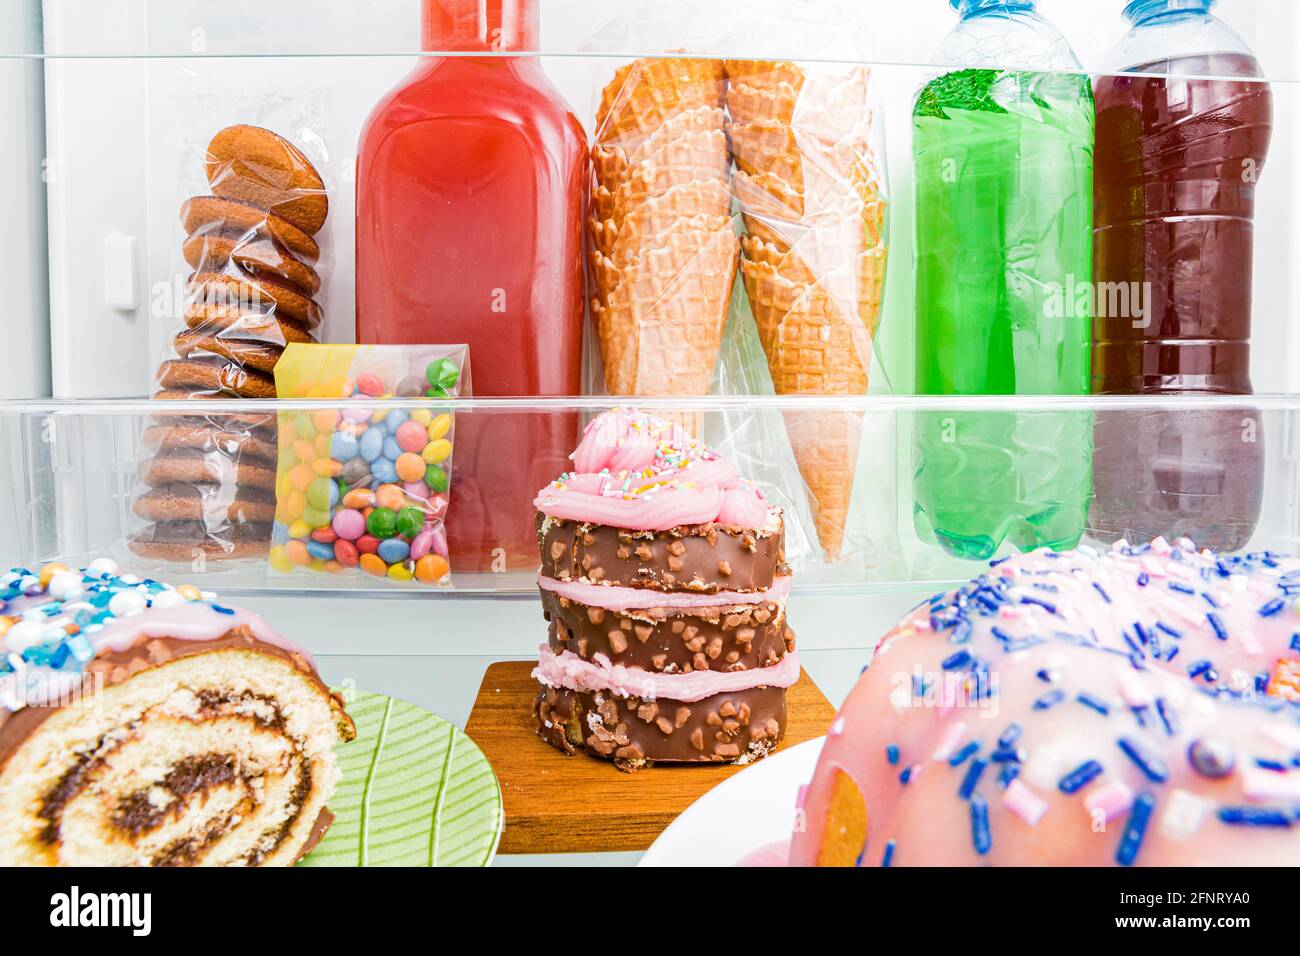 Primo piano frigorifero dall'interno, ripiani in vetro con dolci colorati, torte, biscotti, caramelle, bottiglie di bevande zuccherate. Alimentazione malsana, zucchero cibo con Foto Stock